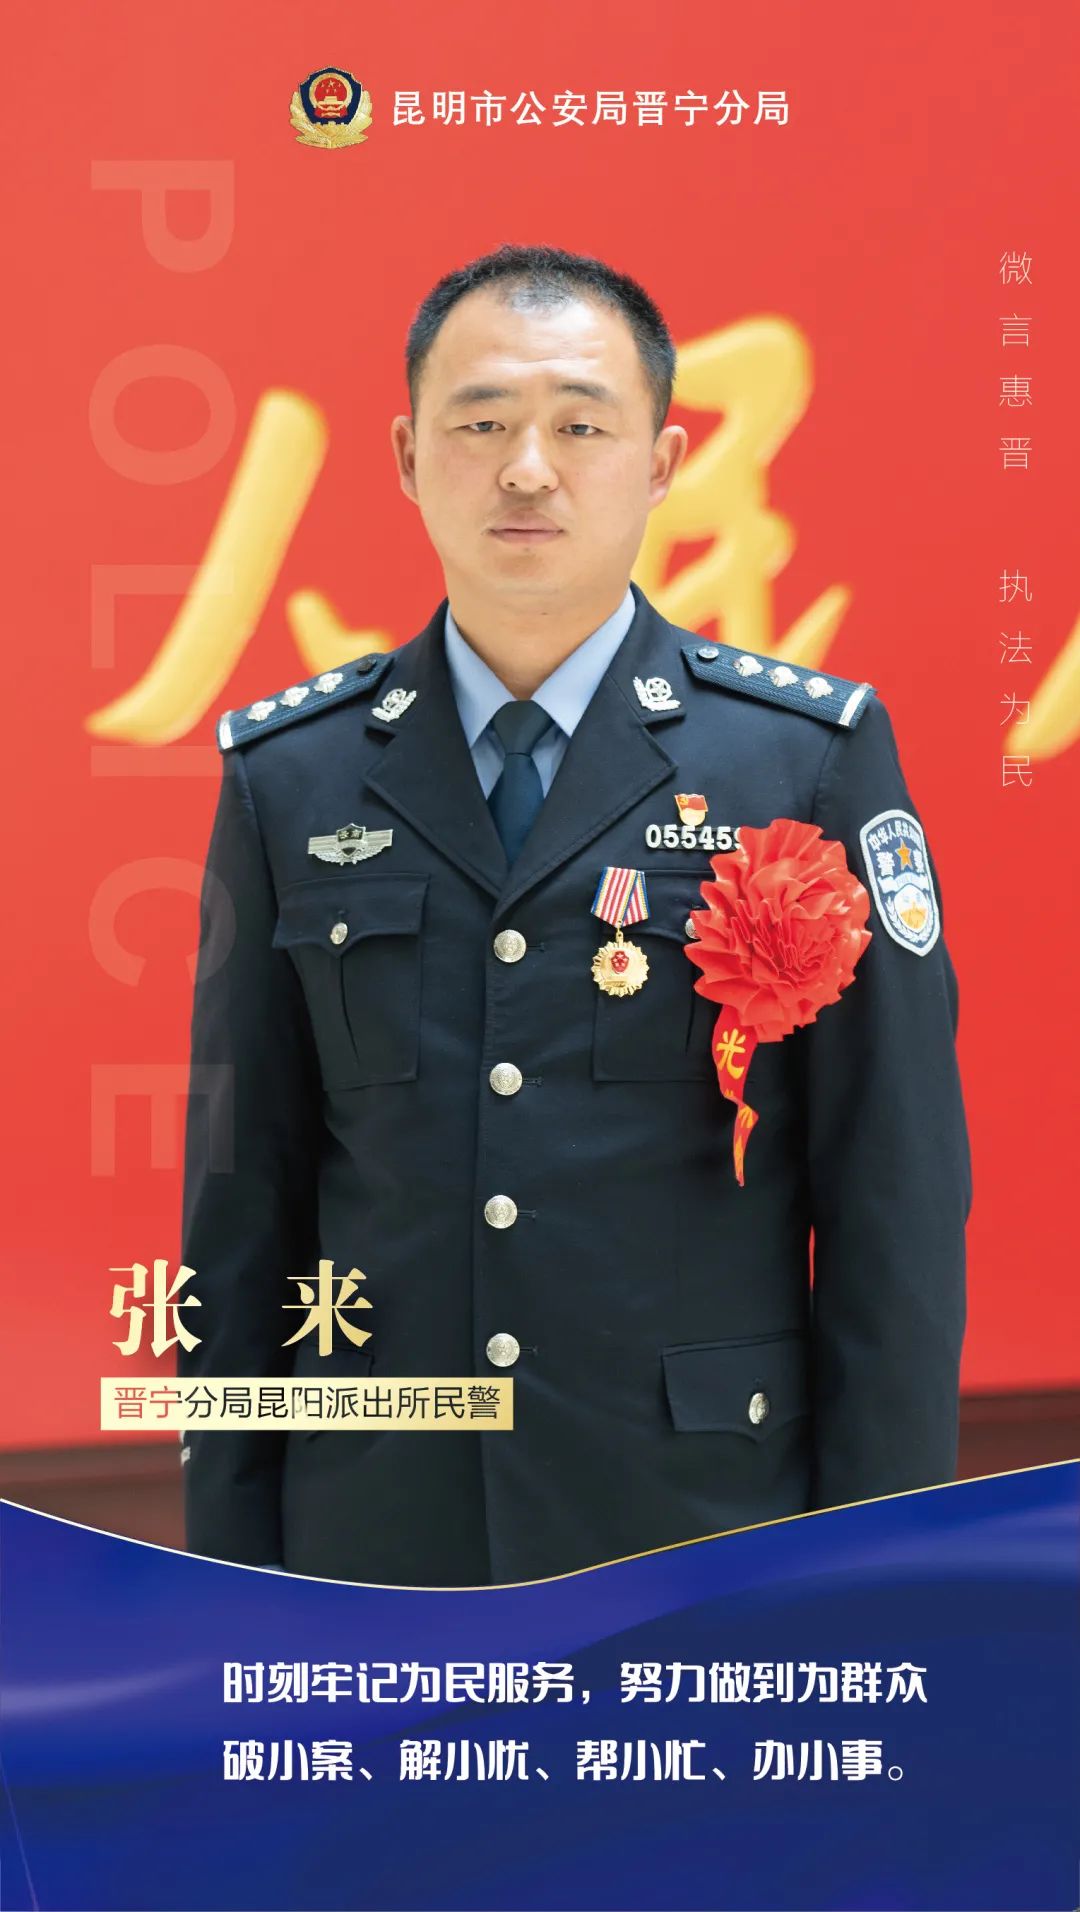 张来,男, 1987年9月出生,中共党员,大学本科文化,一级警司警衔,2011年